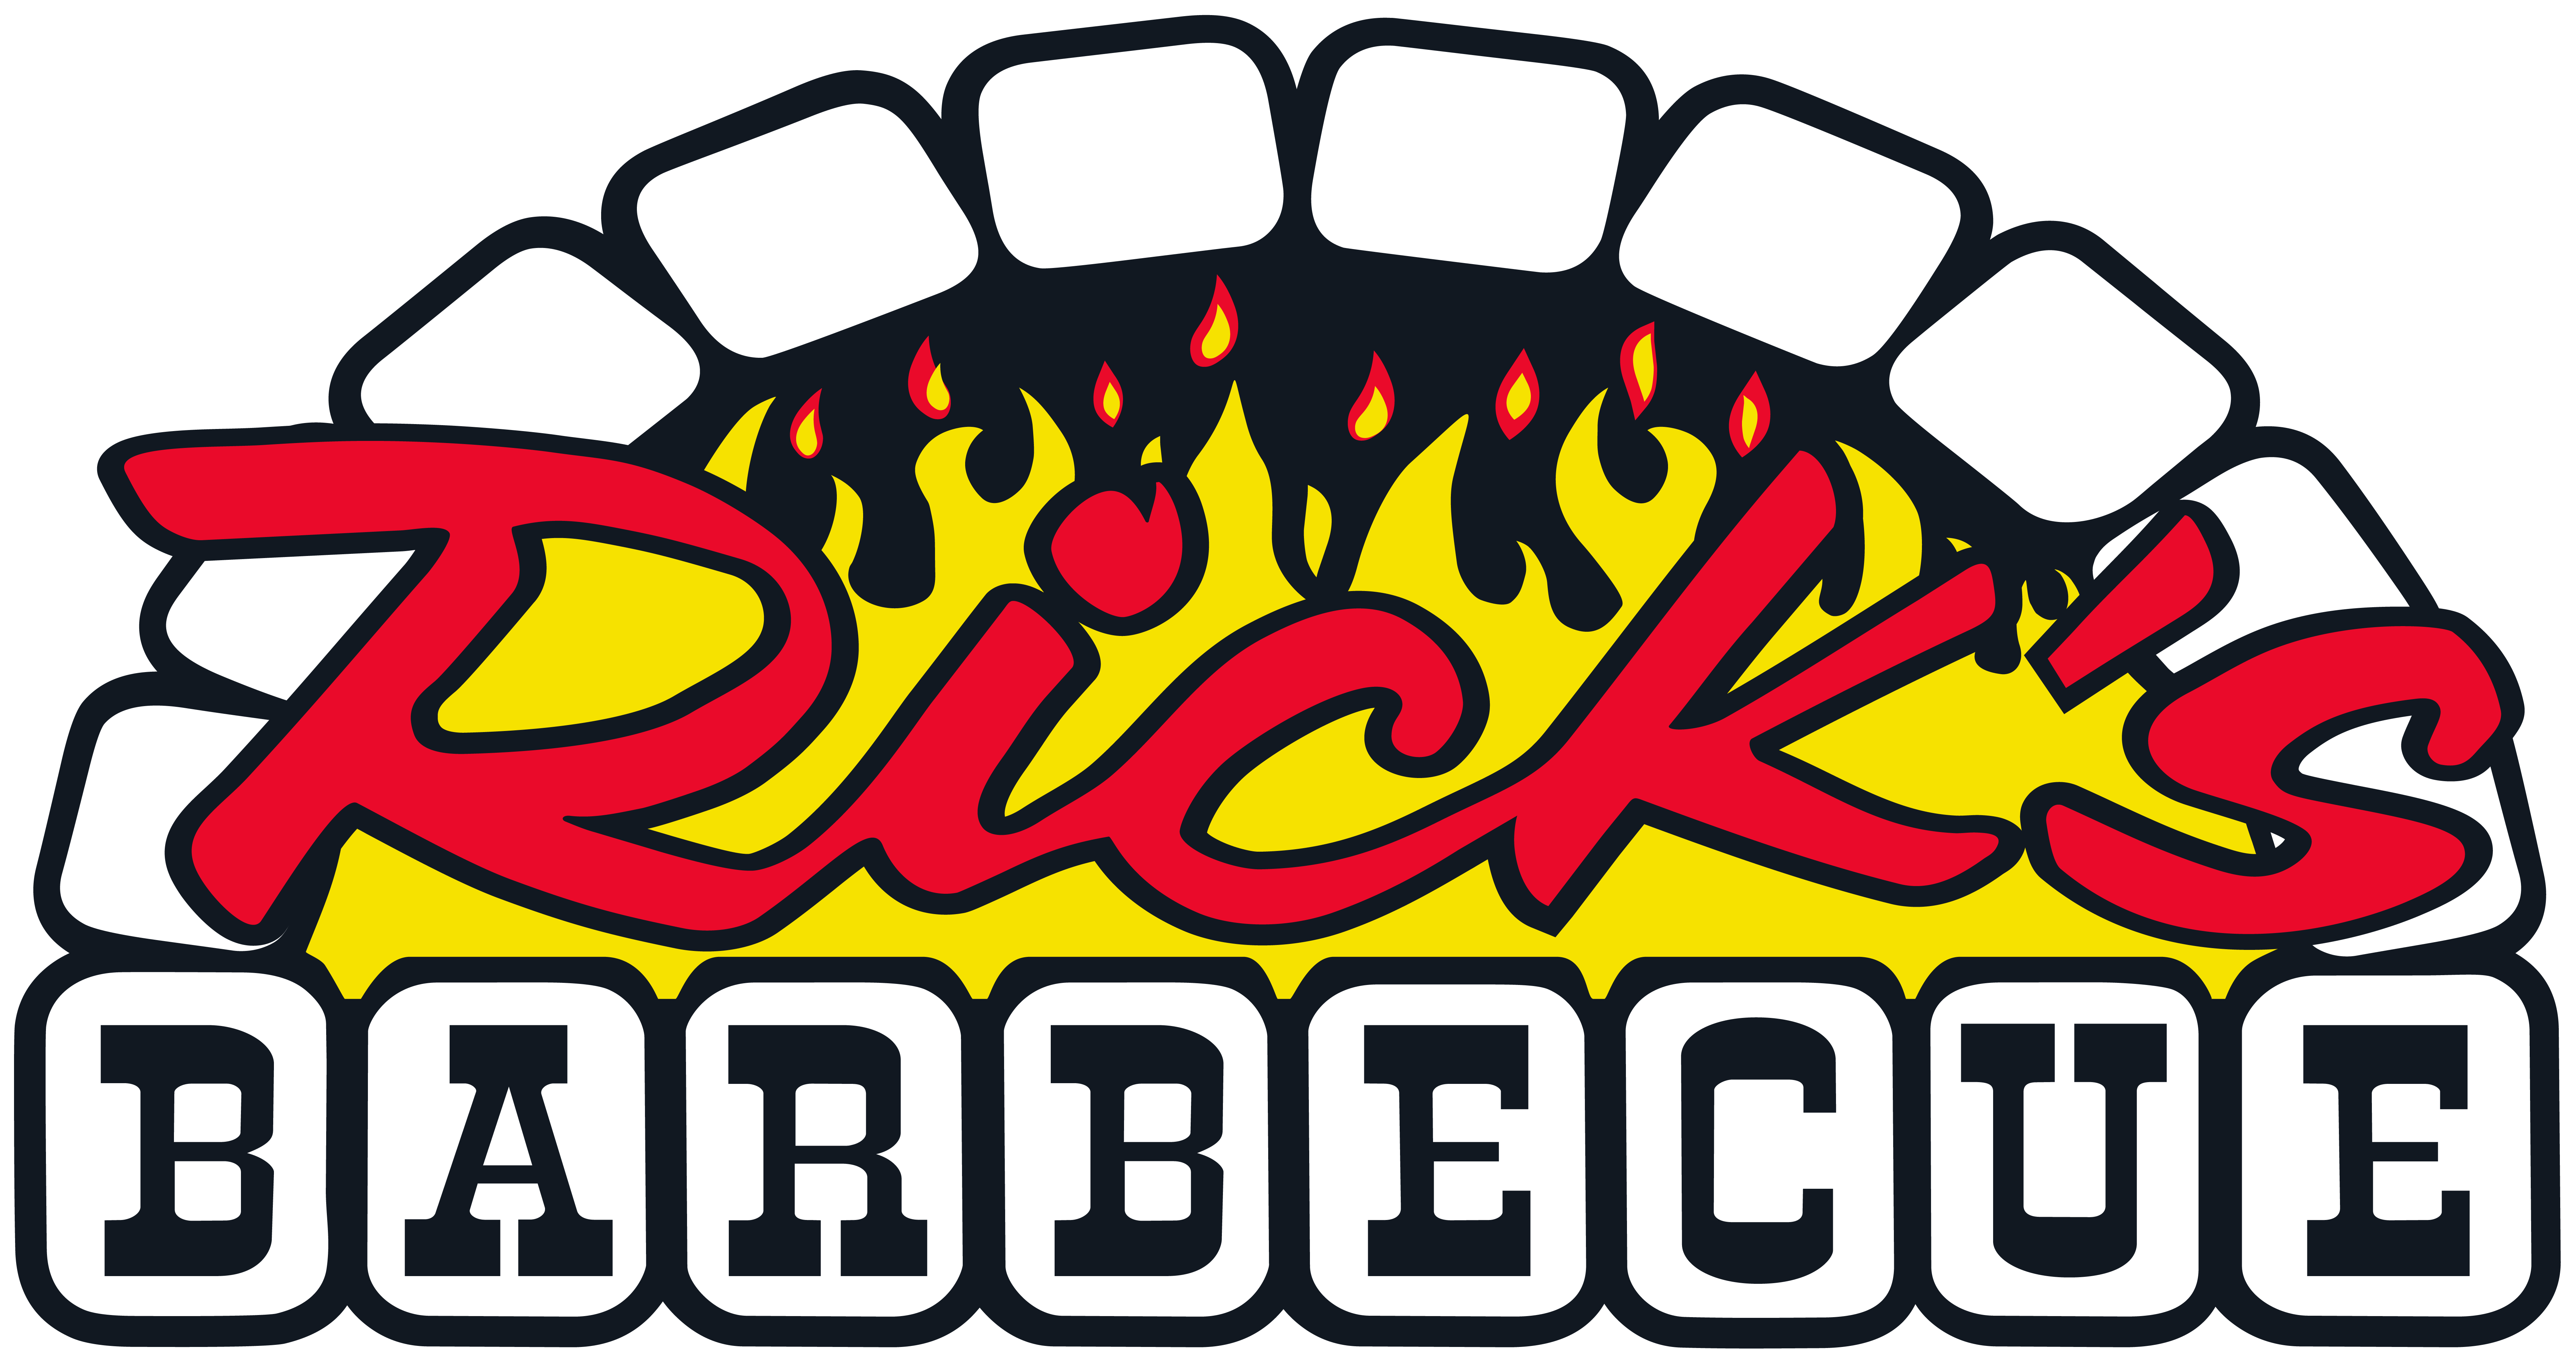 Rick's Barbecue